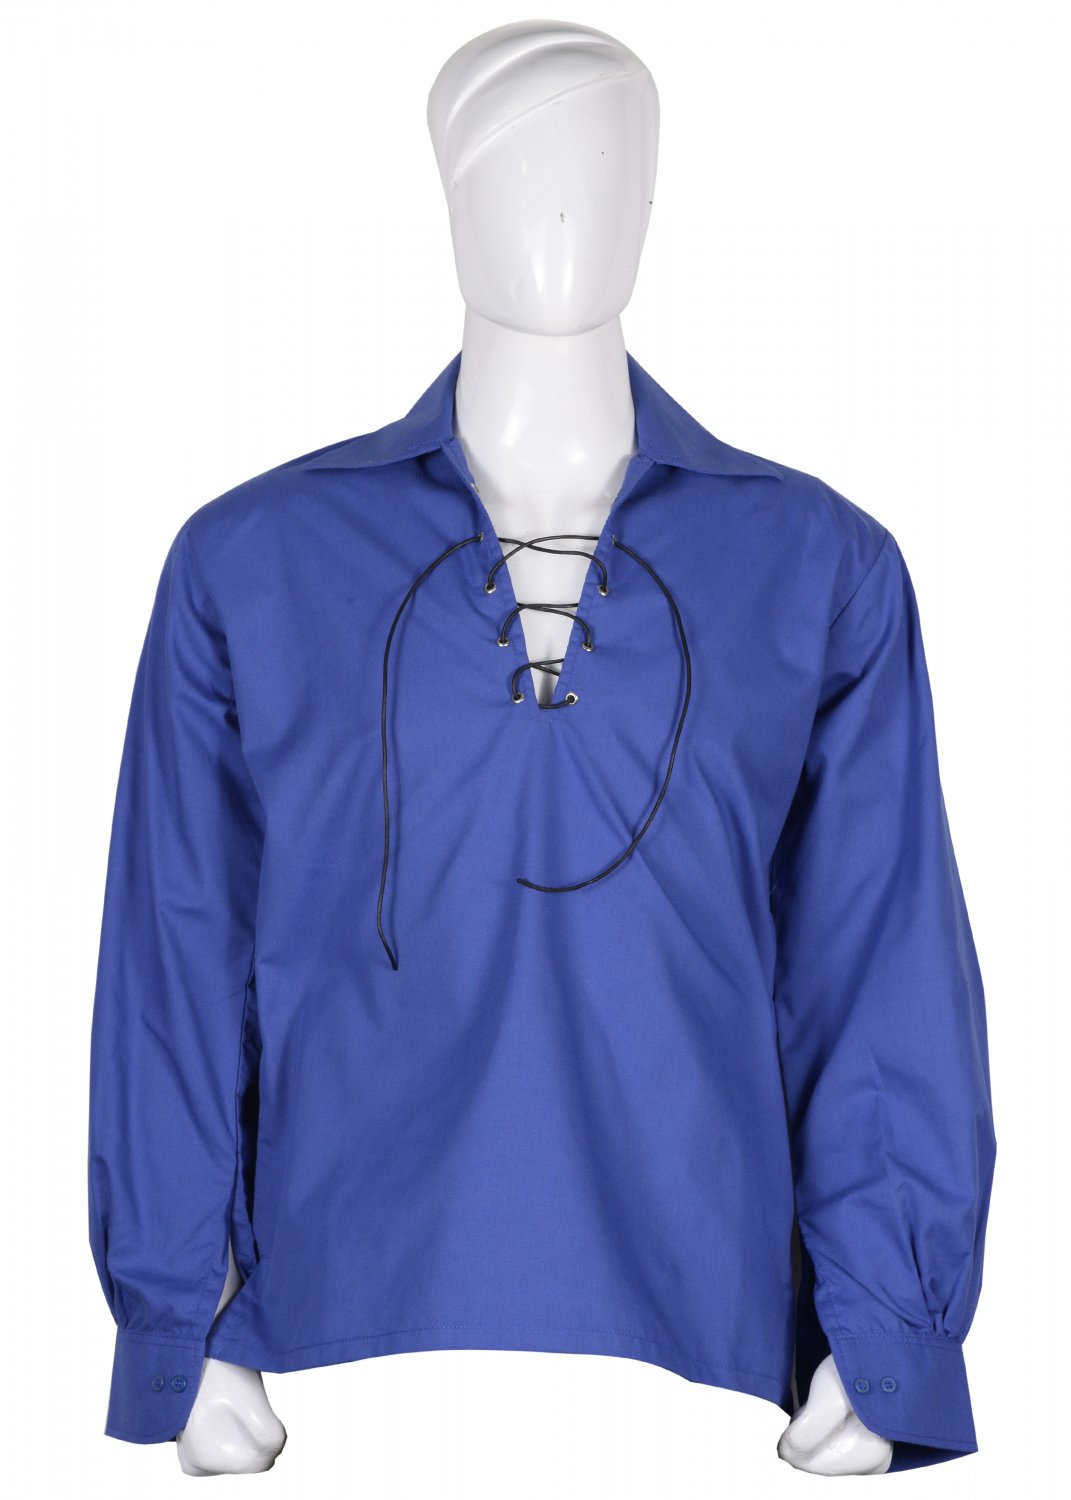 6XL Size Royal Blue Color Cotton Traditional Scottish Style Jacobean Jacobite Ghillie Kilt Shirt